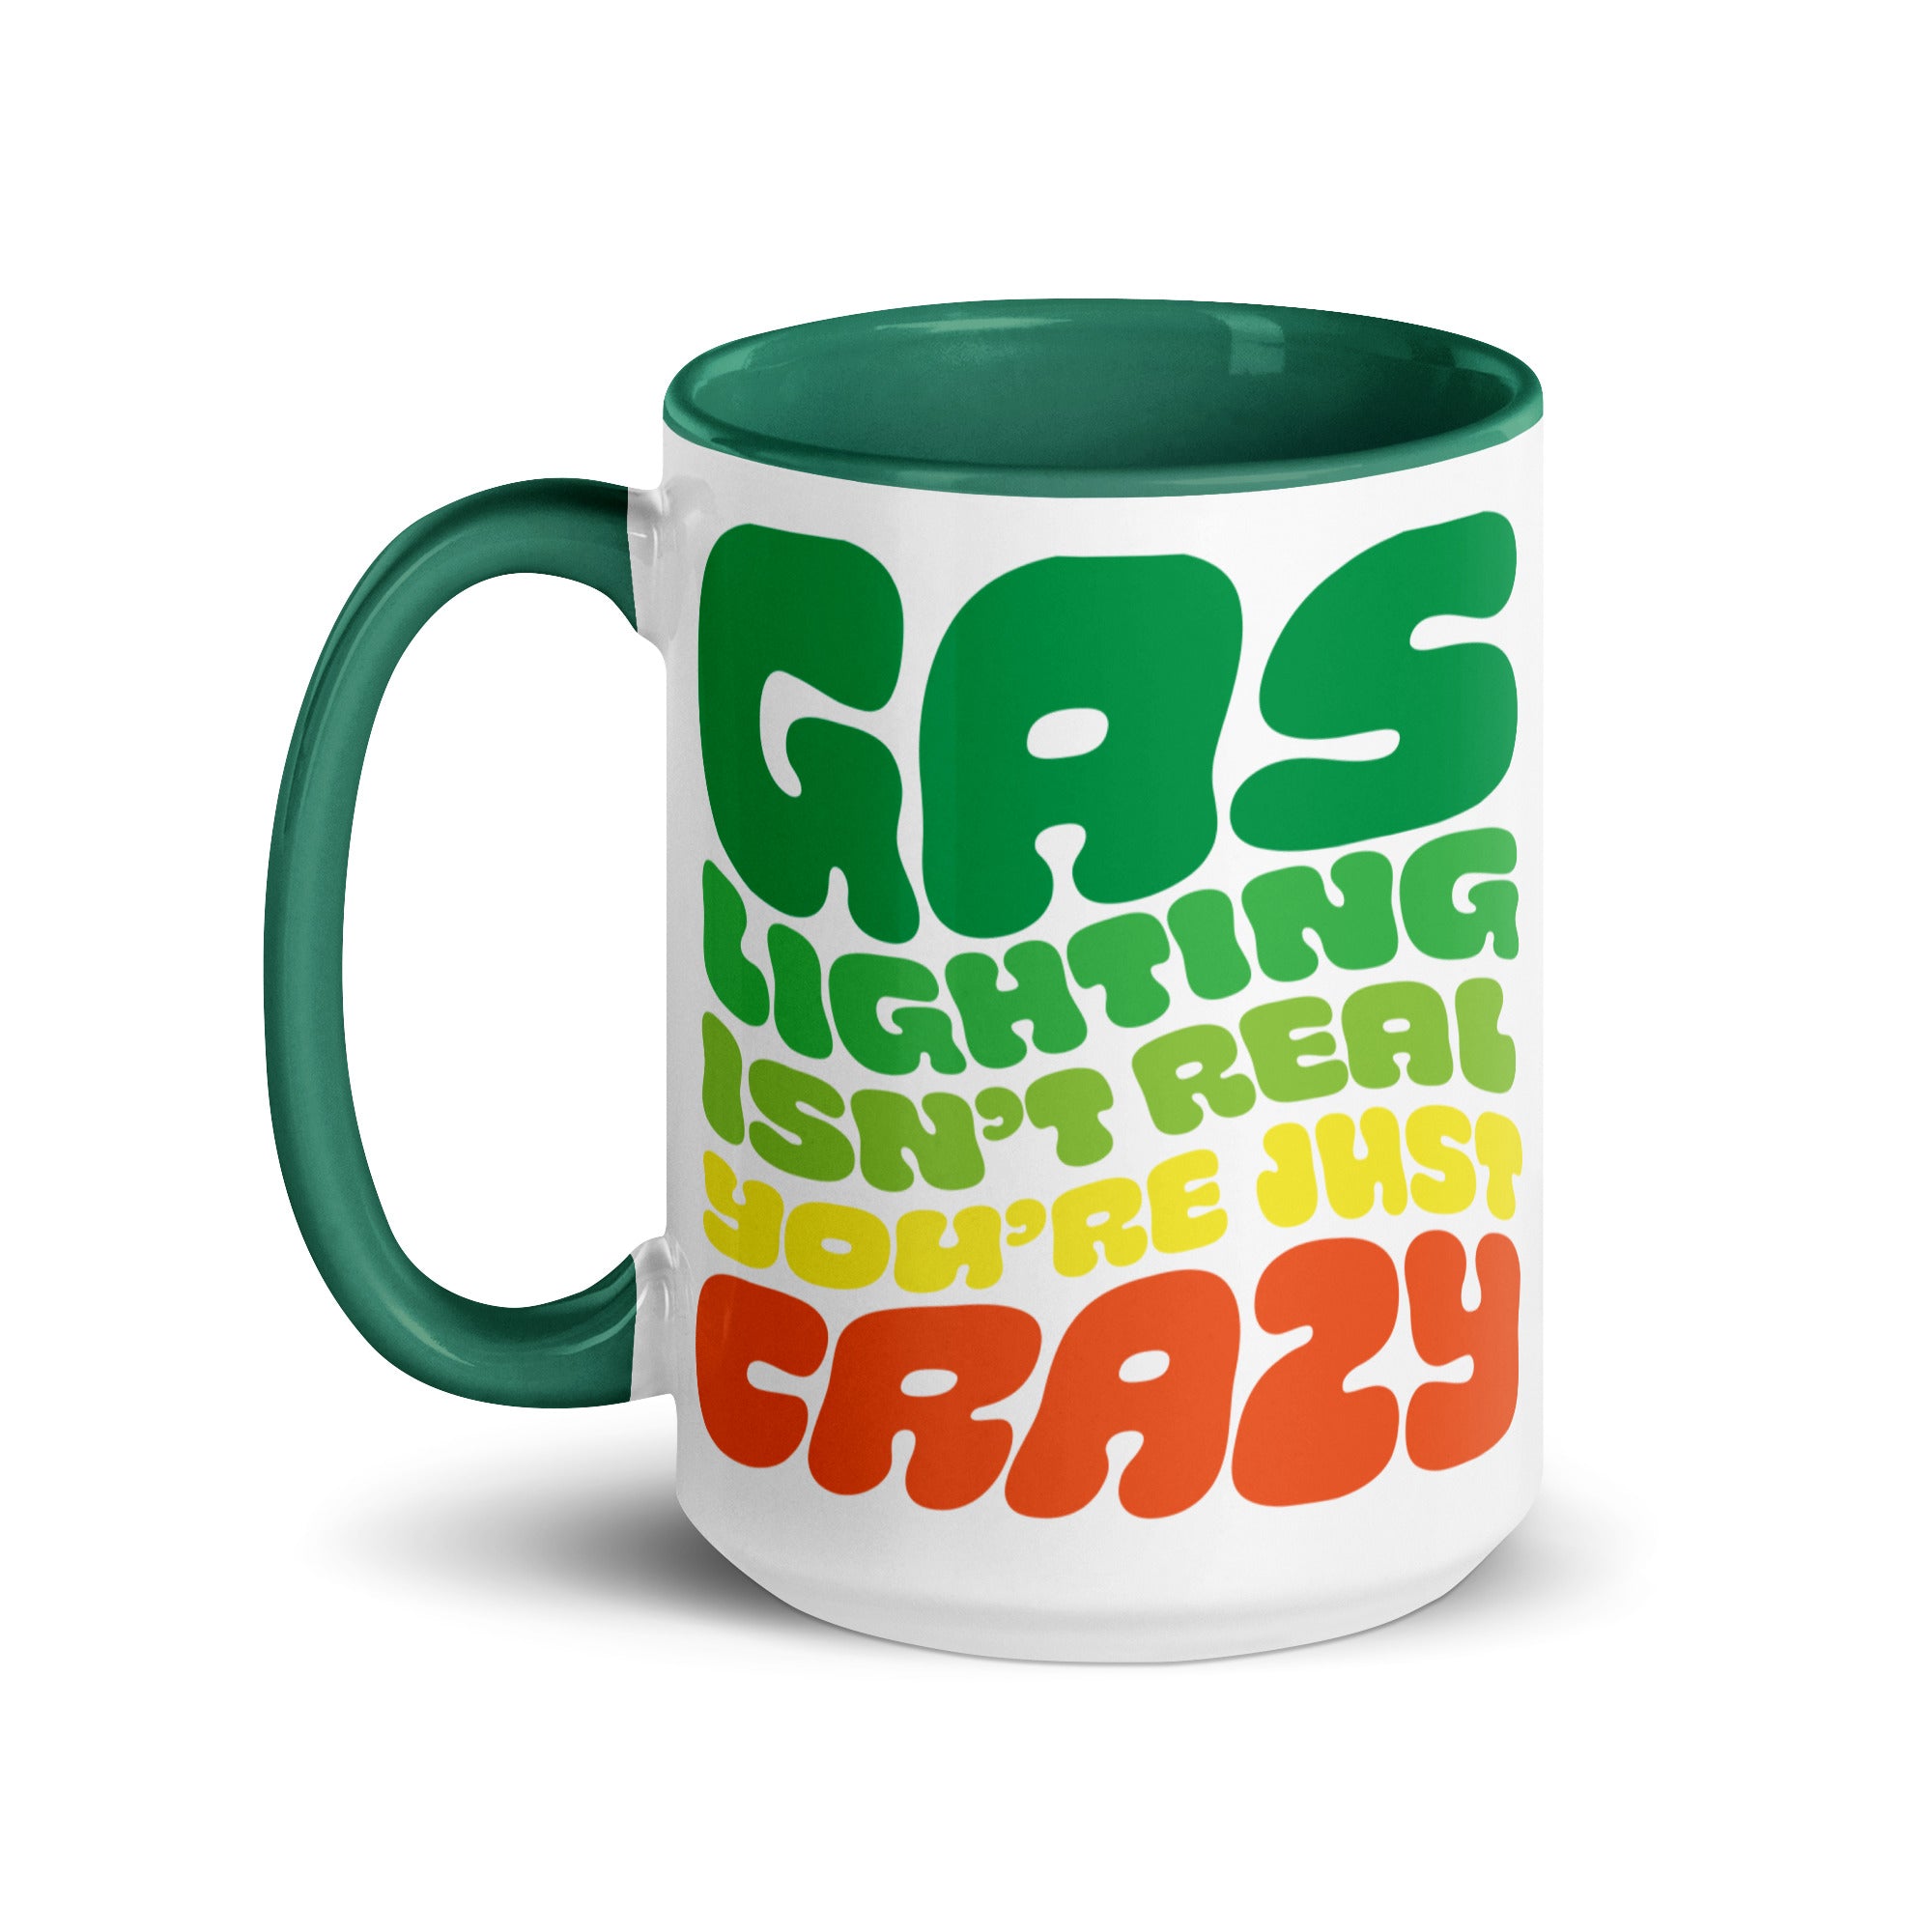 Gaslighting Isn't Real Mug with Color Inside